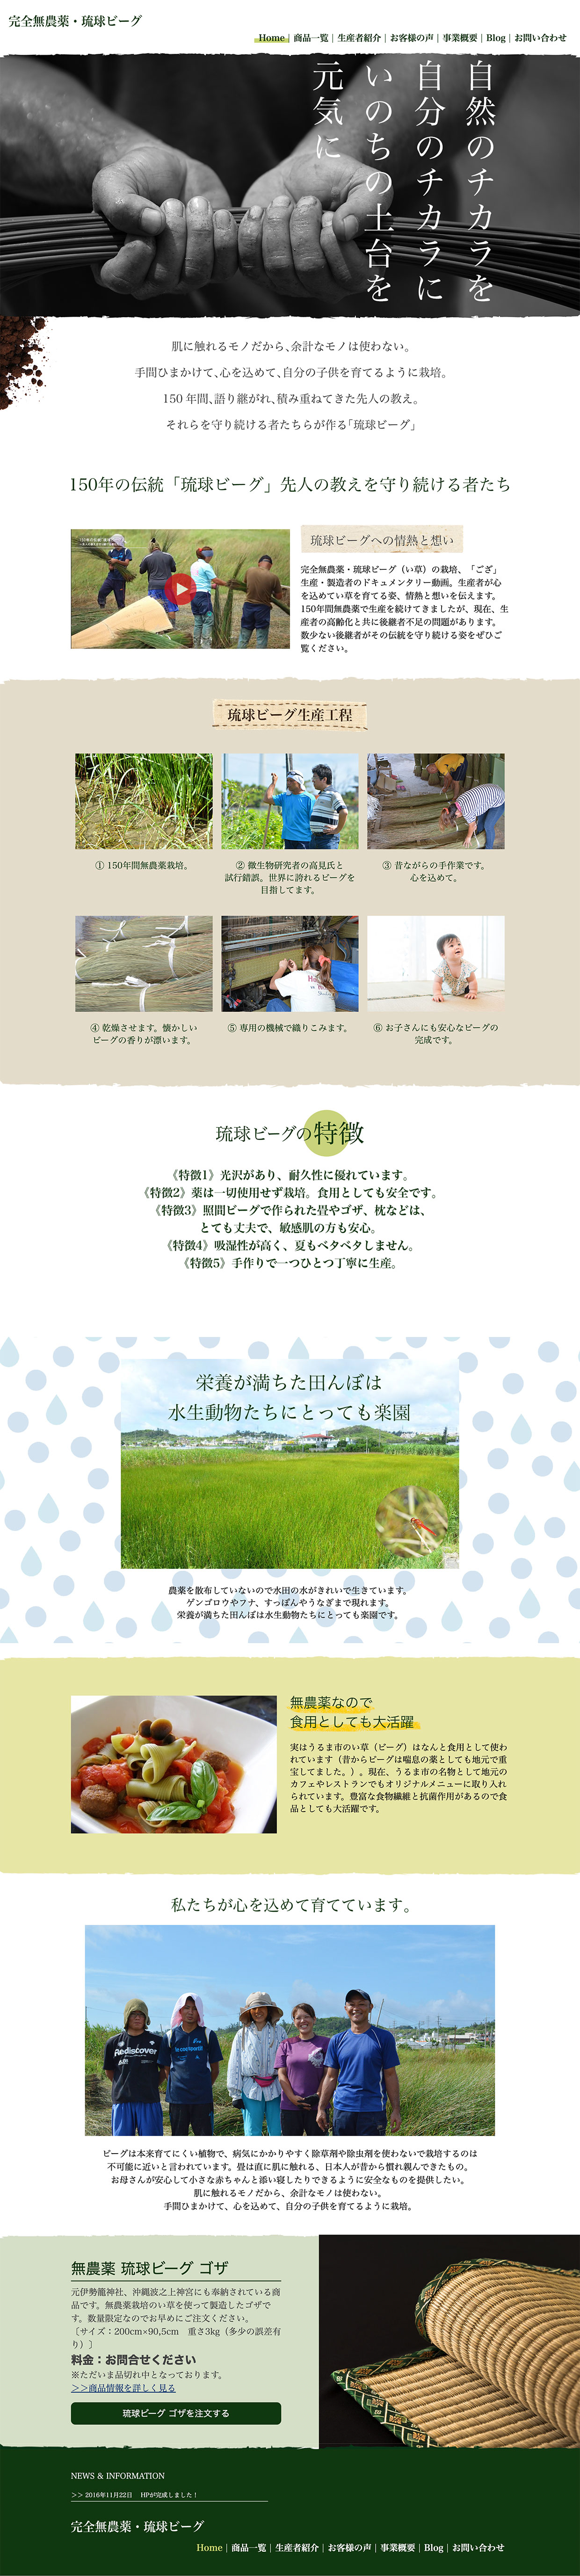 農業生産法人合同会社テルマ様「完全無農薬・琉球ビーグ」ホームページ制作